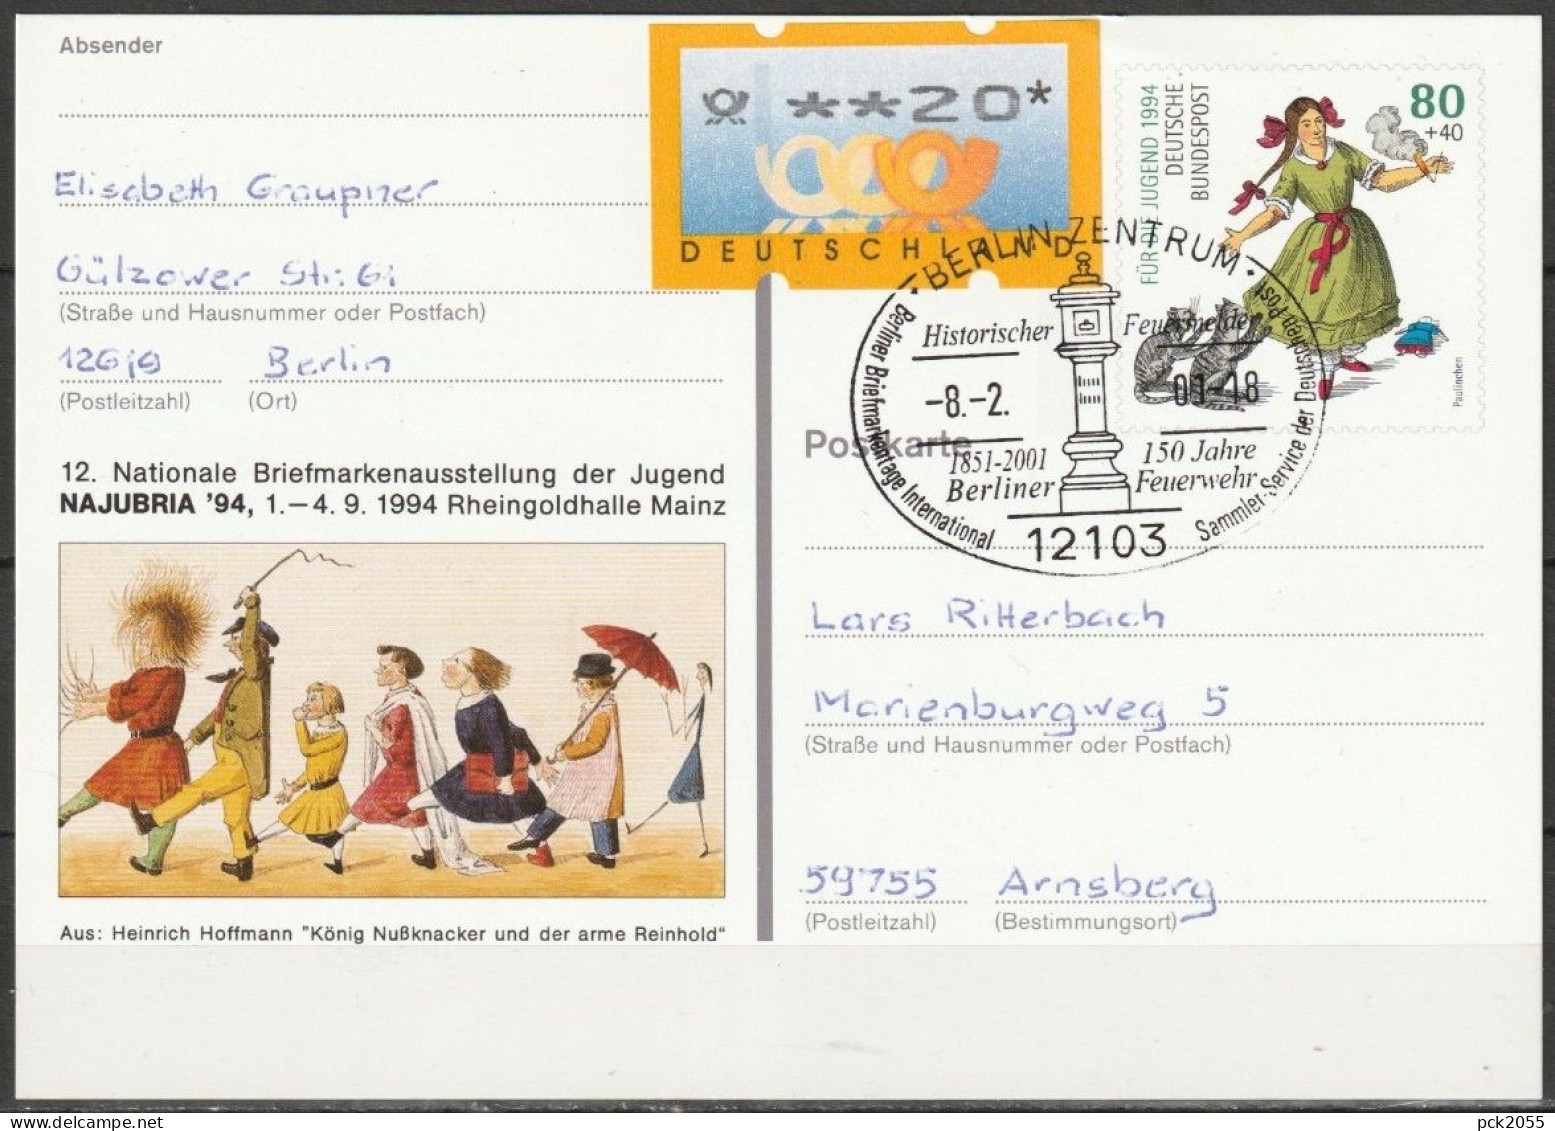 BRD Ganzsache 1994 PSo 34 NAJUBRIA 94 Mainz SST. Berlin Historischer Feuermelder 8.2.2001 (d 3547)günstige Versandkosten - Postcards - Used